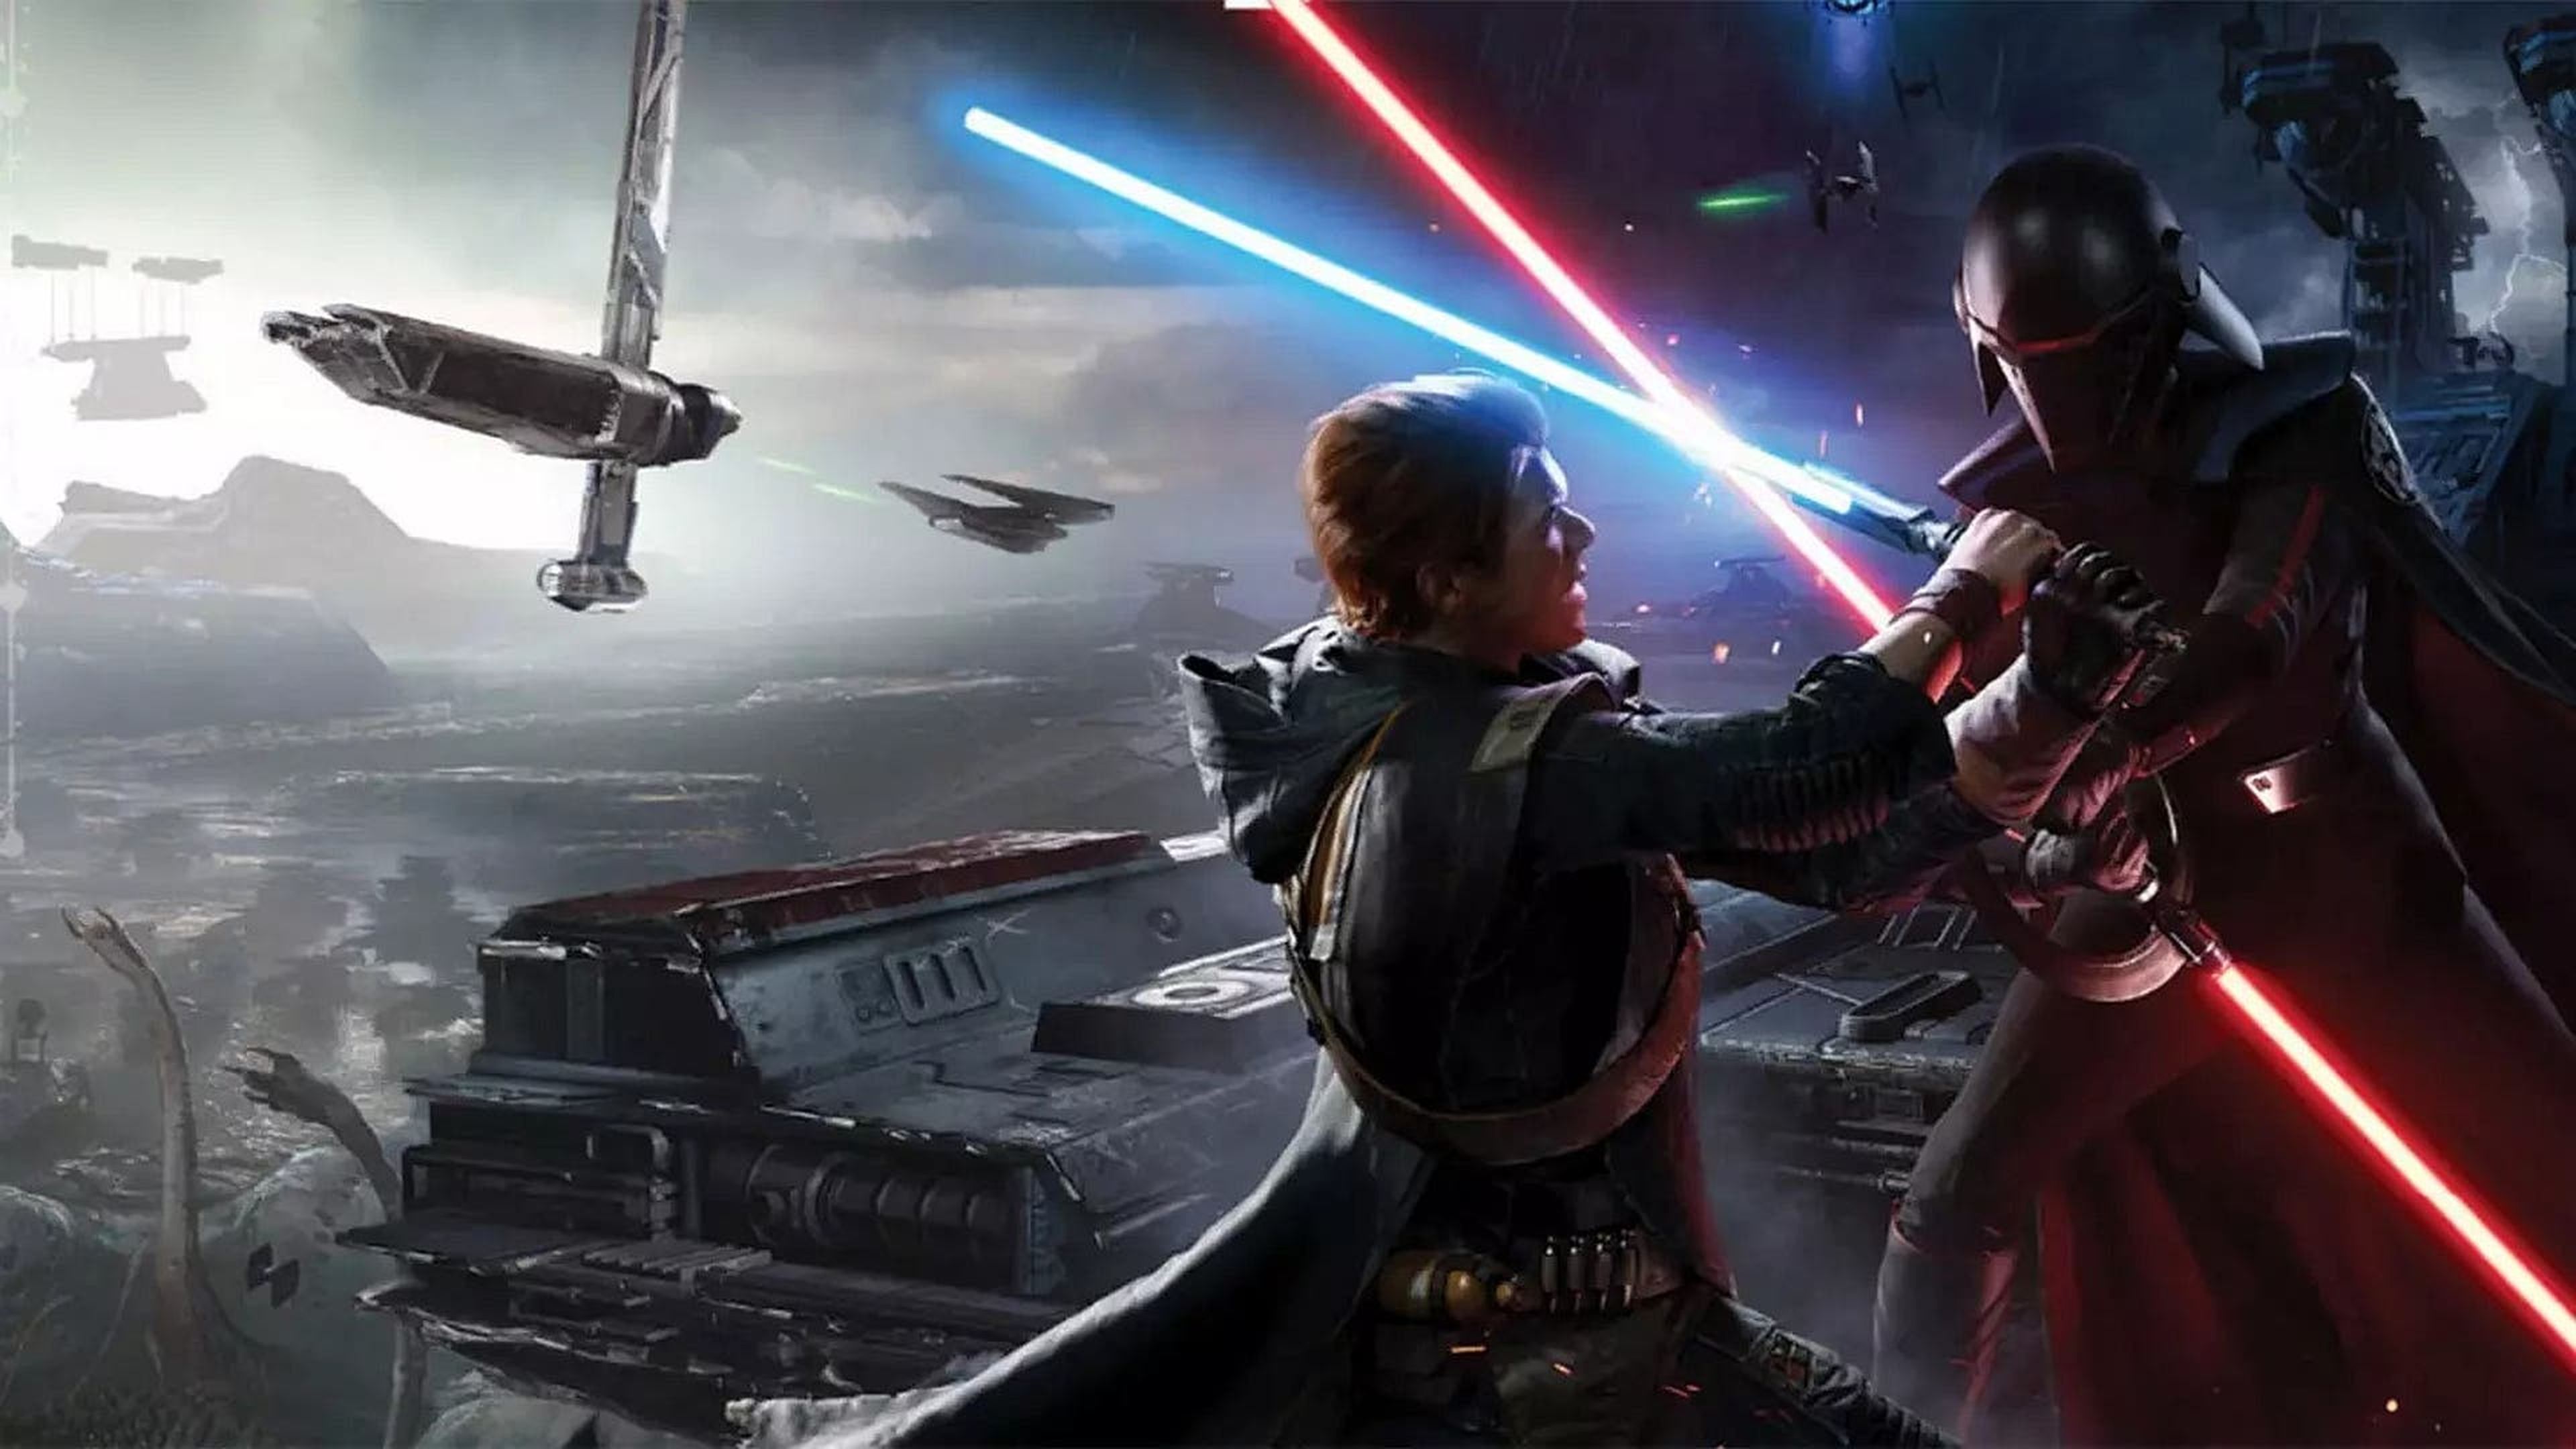 Un Jedi y un Sith luchando por conseguir hacerse con una figura de Star Wars muy rara.